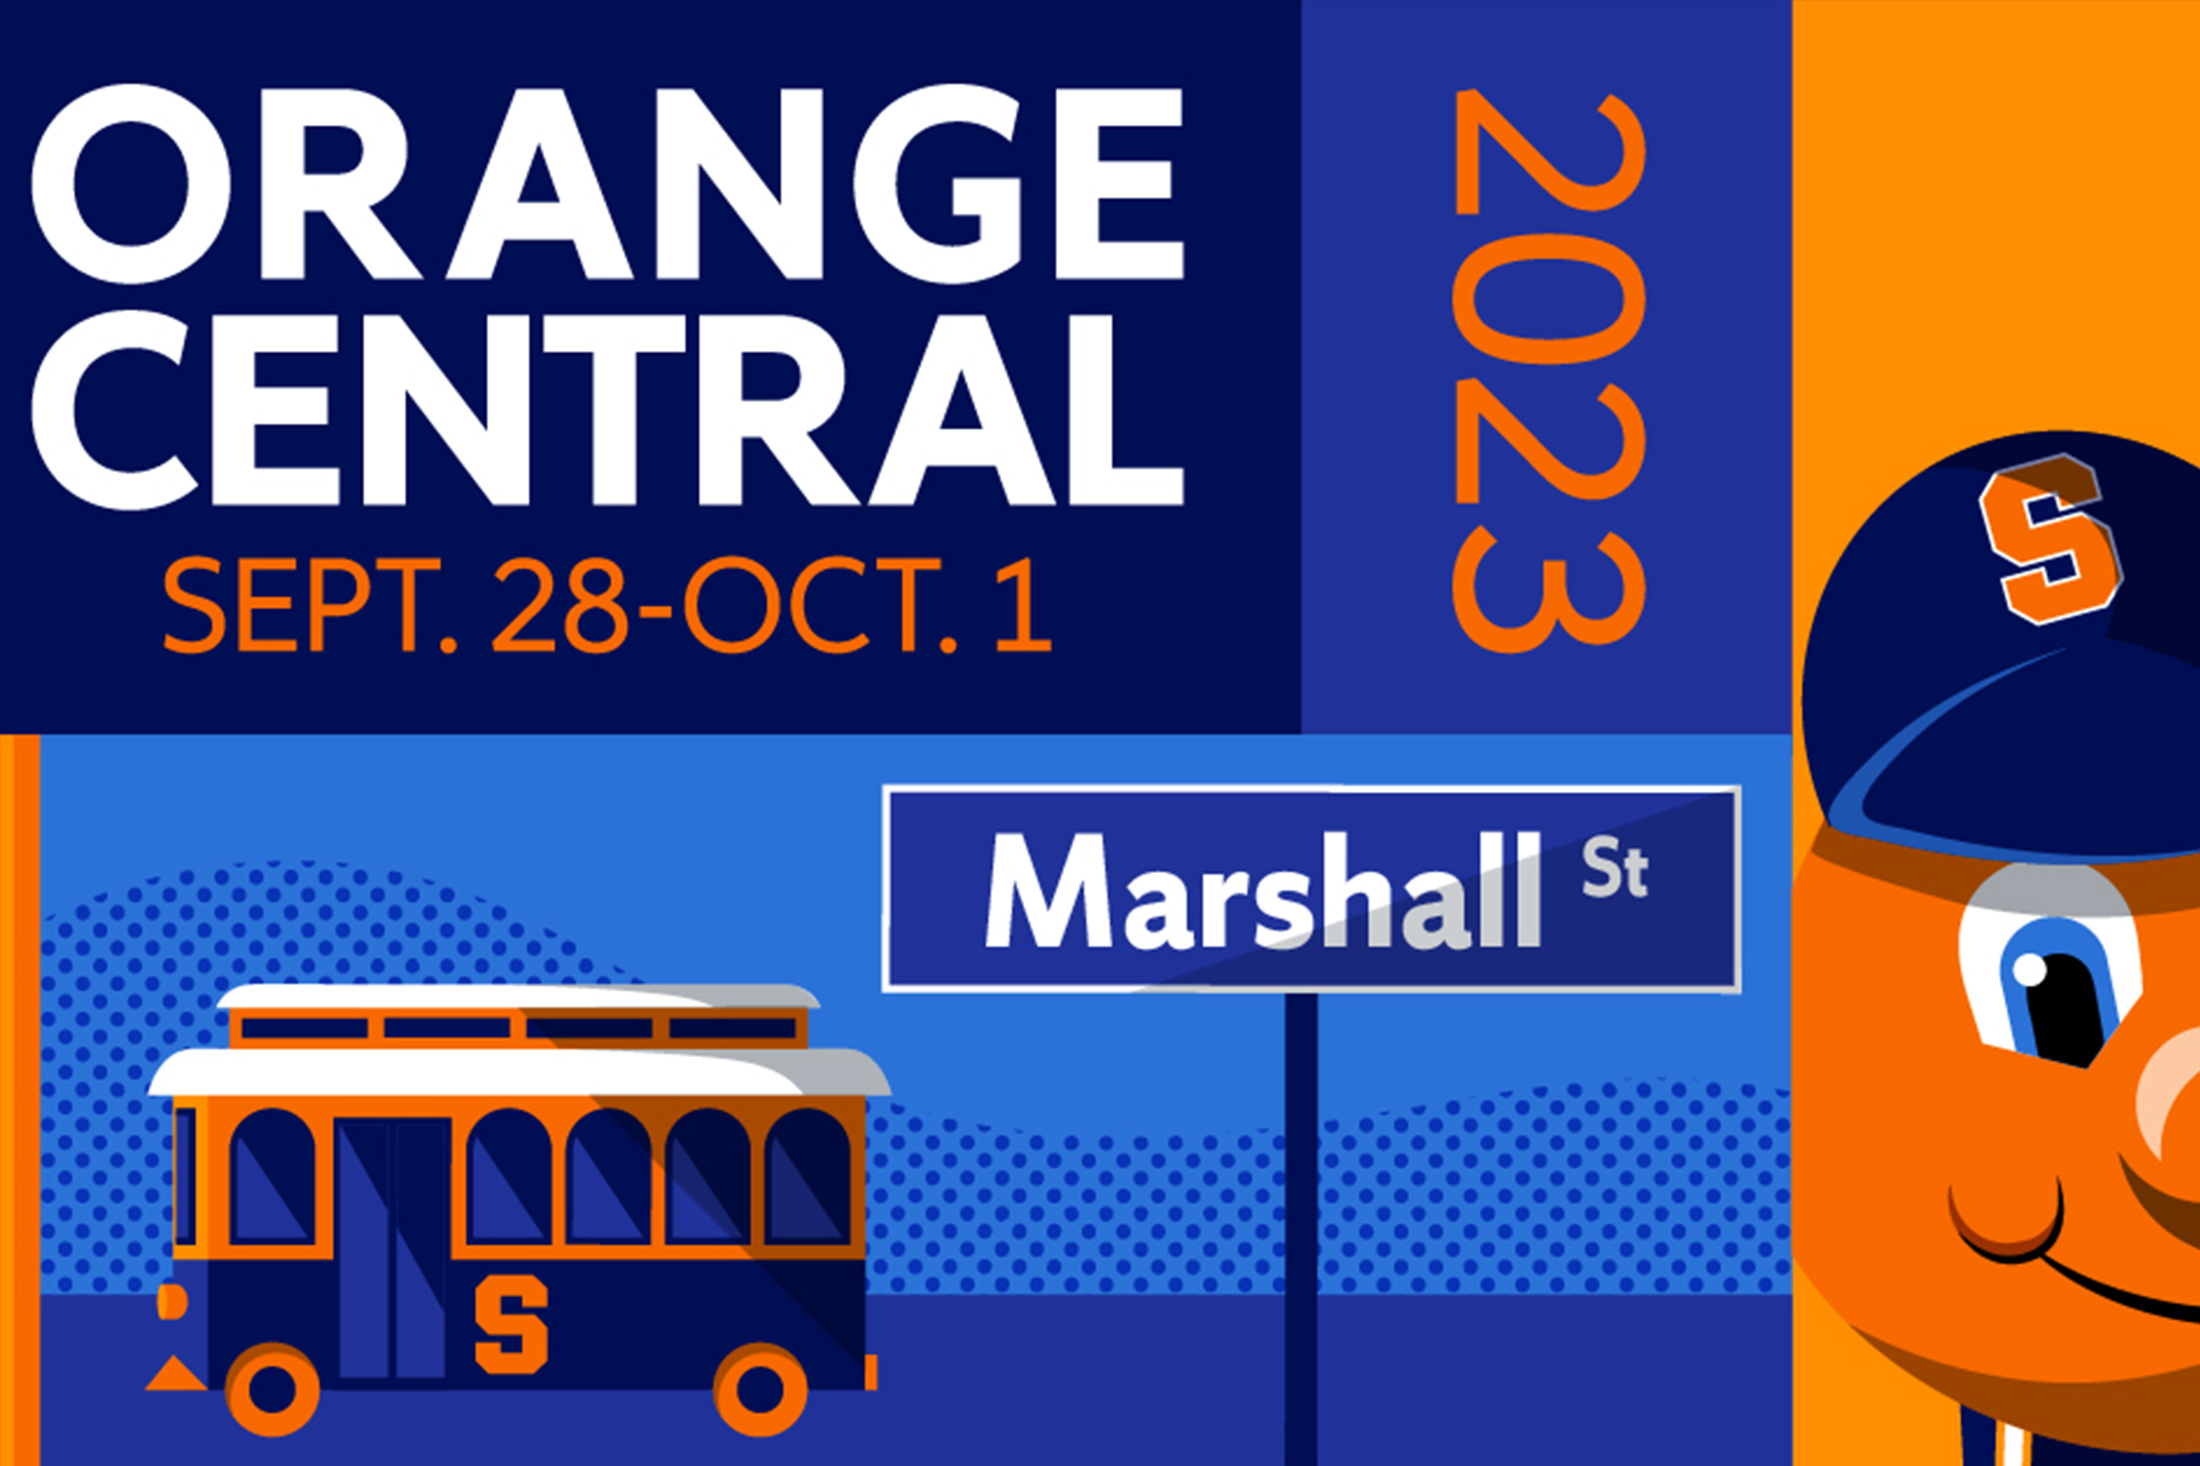 Orange Central weekend promotional image